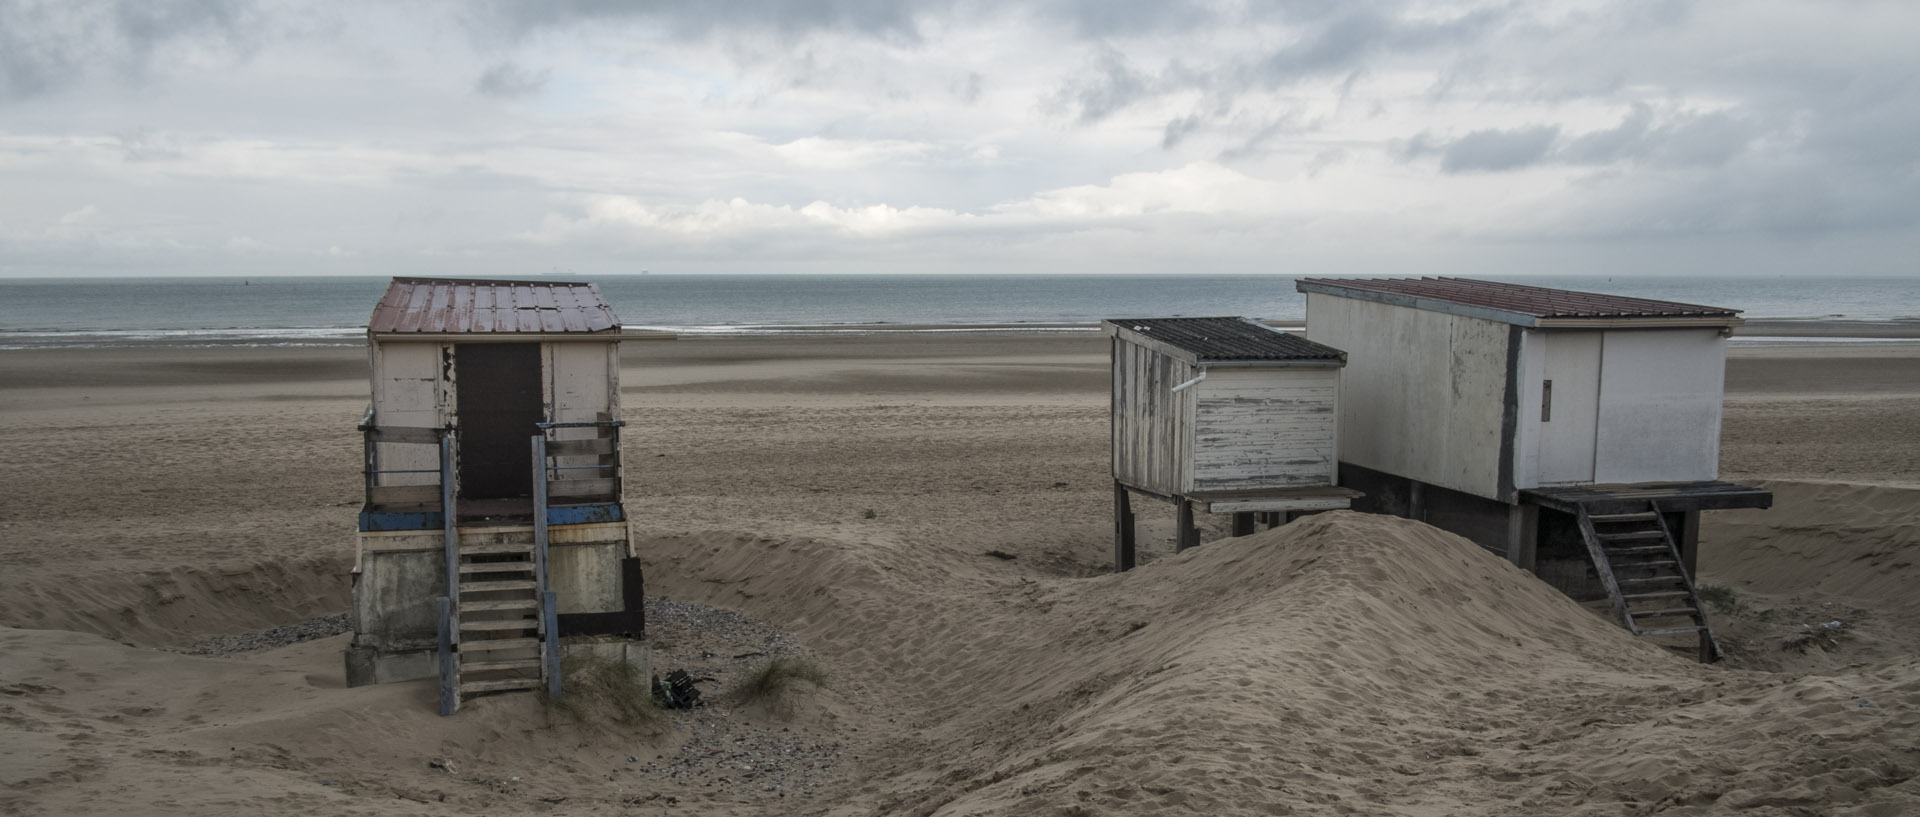 Mercredi 4 novembre 2015, 14:05, plage de Calais